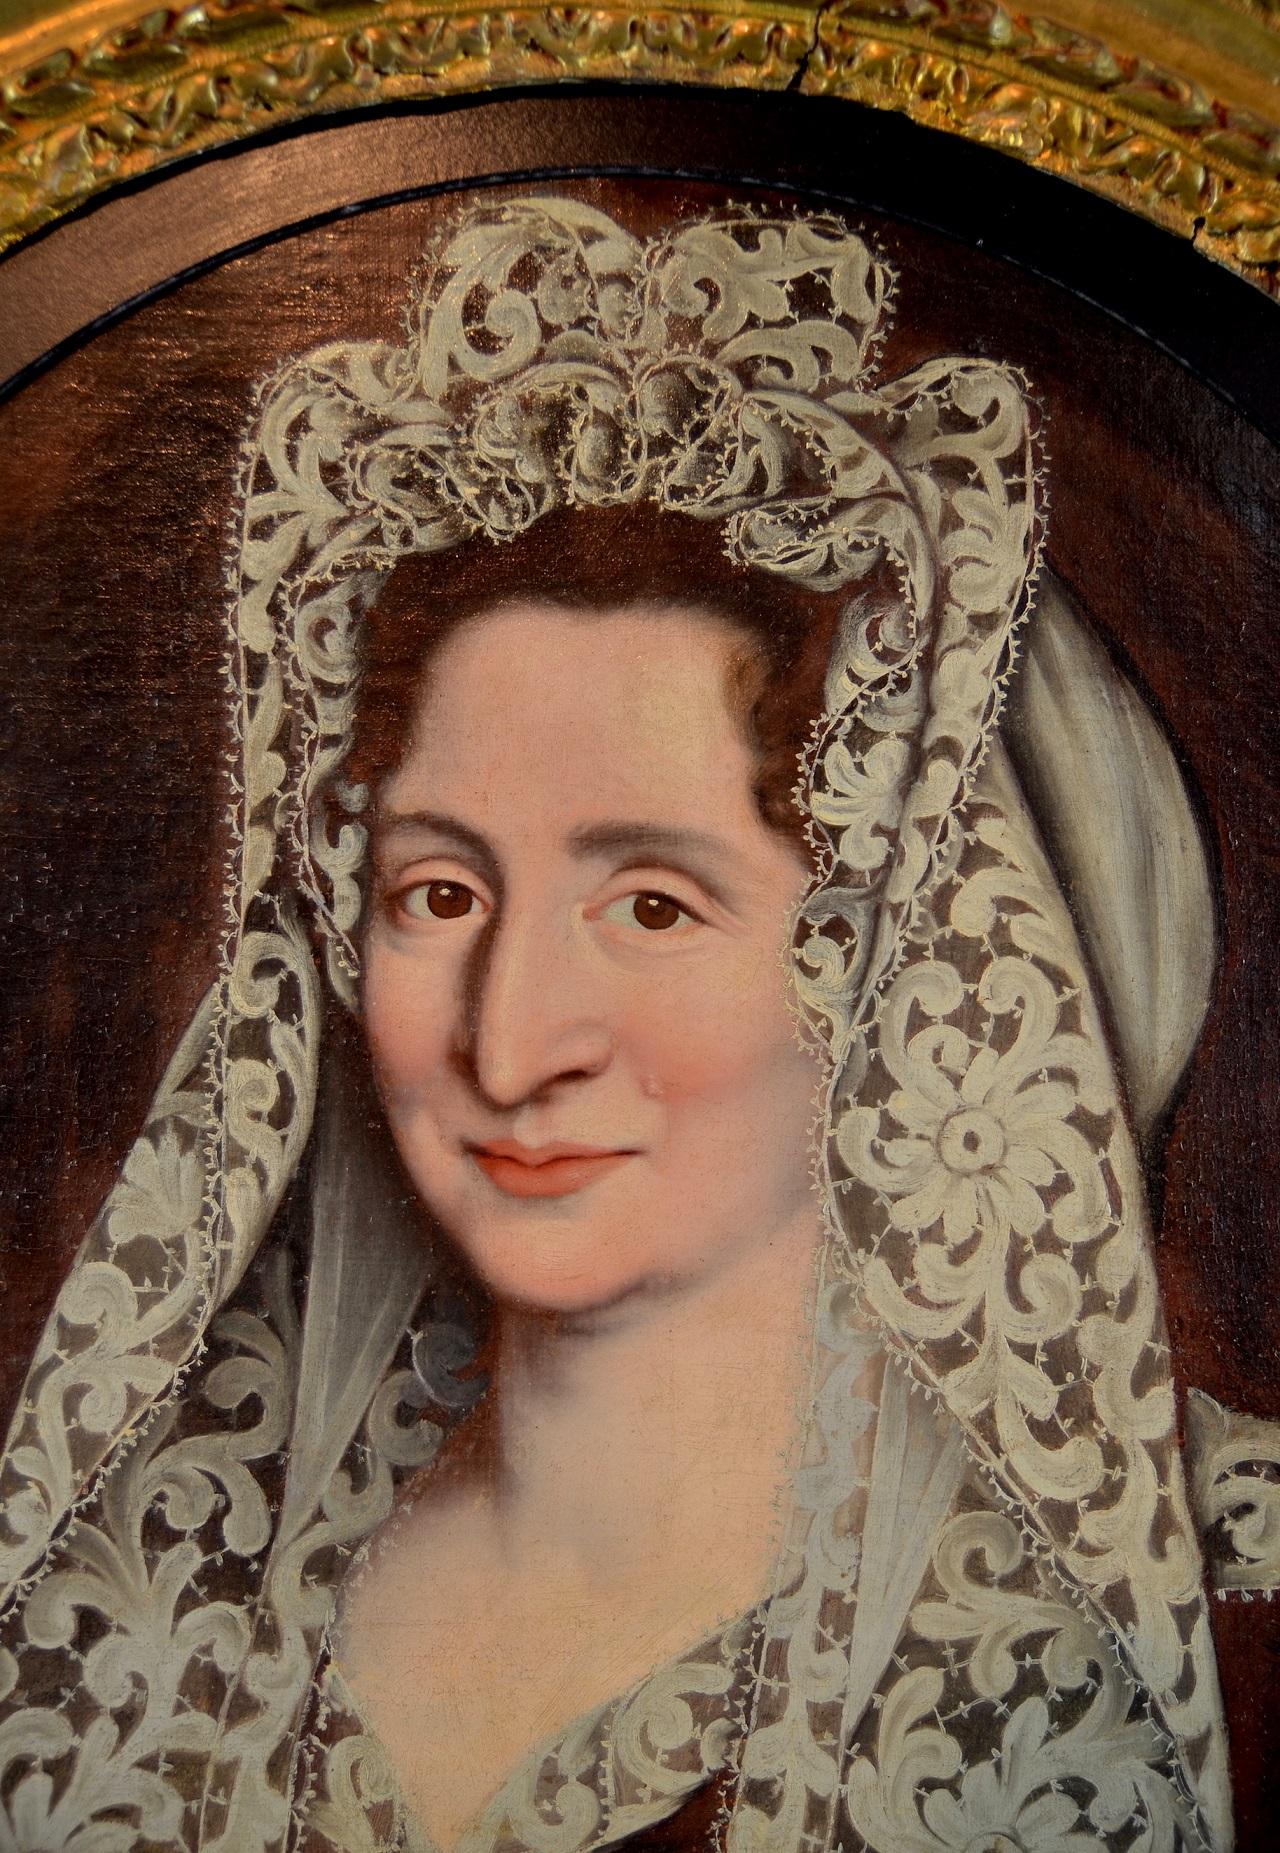 Portrait d'une femme noble en robe de cérémonie avec mantille en dentelle de Chantilly.
Attribué à Jean Ranc (Montpellier 1674 - 1735 Madrid)

huile sur toile ovale
cm.72 x 59 - avec cadre 96 x 84

Provenance : Collection du château de Bourbon,